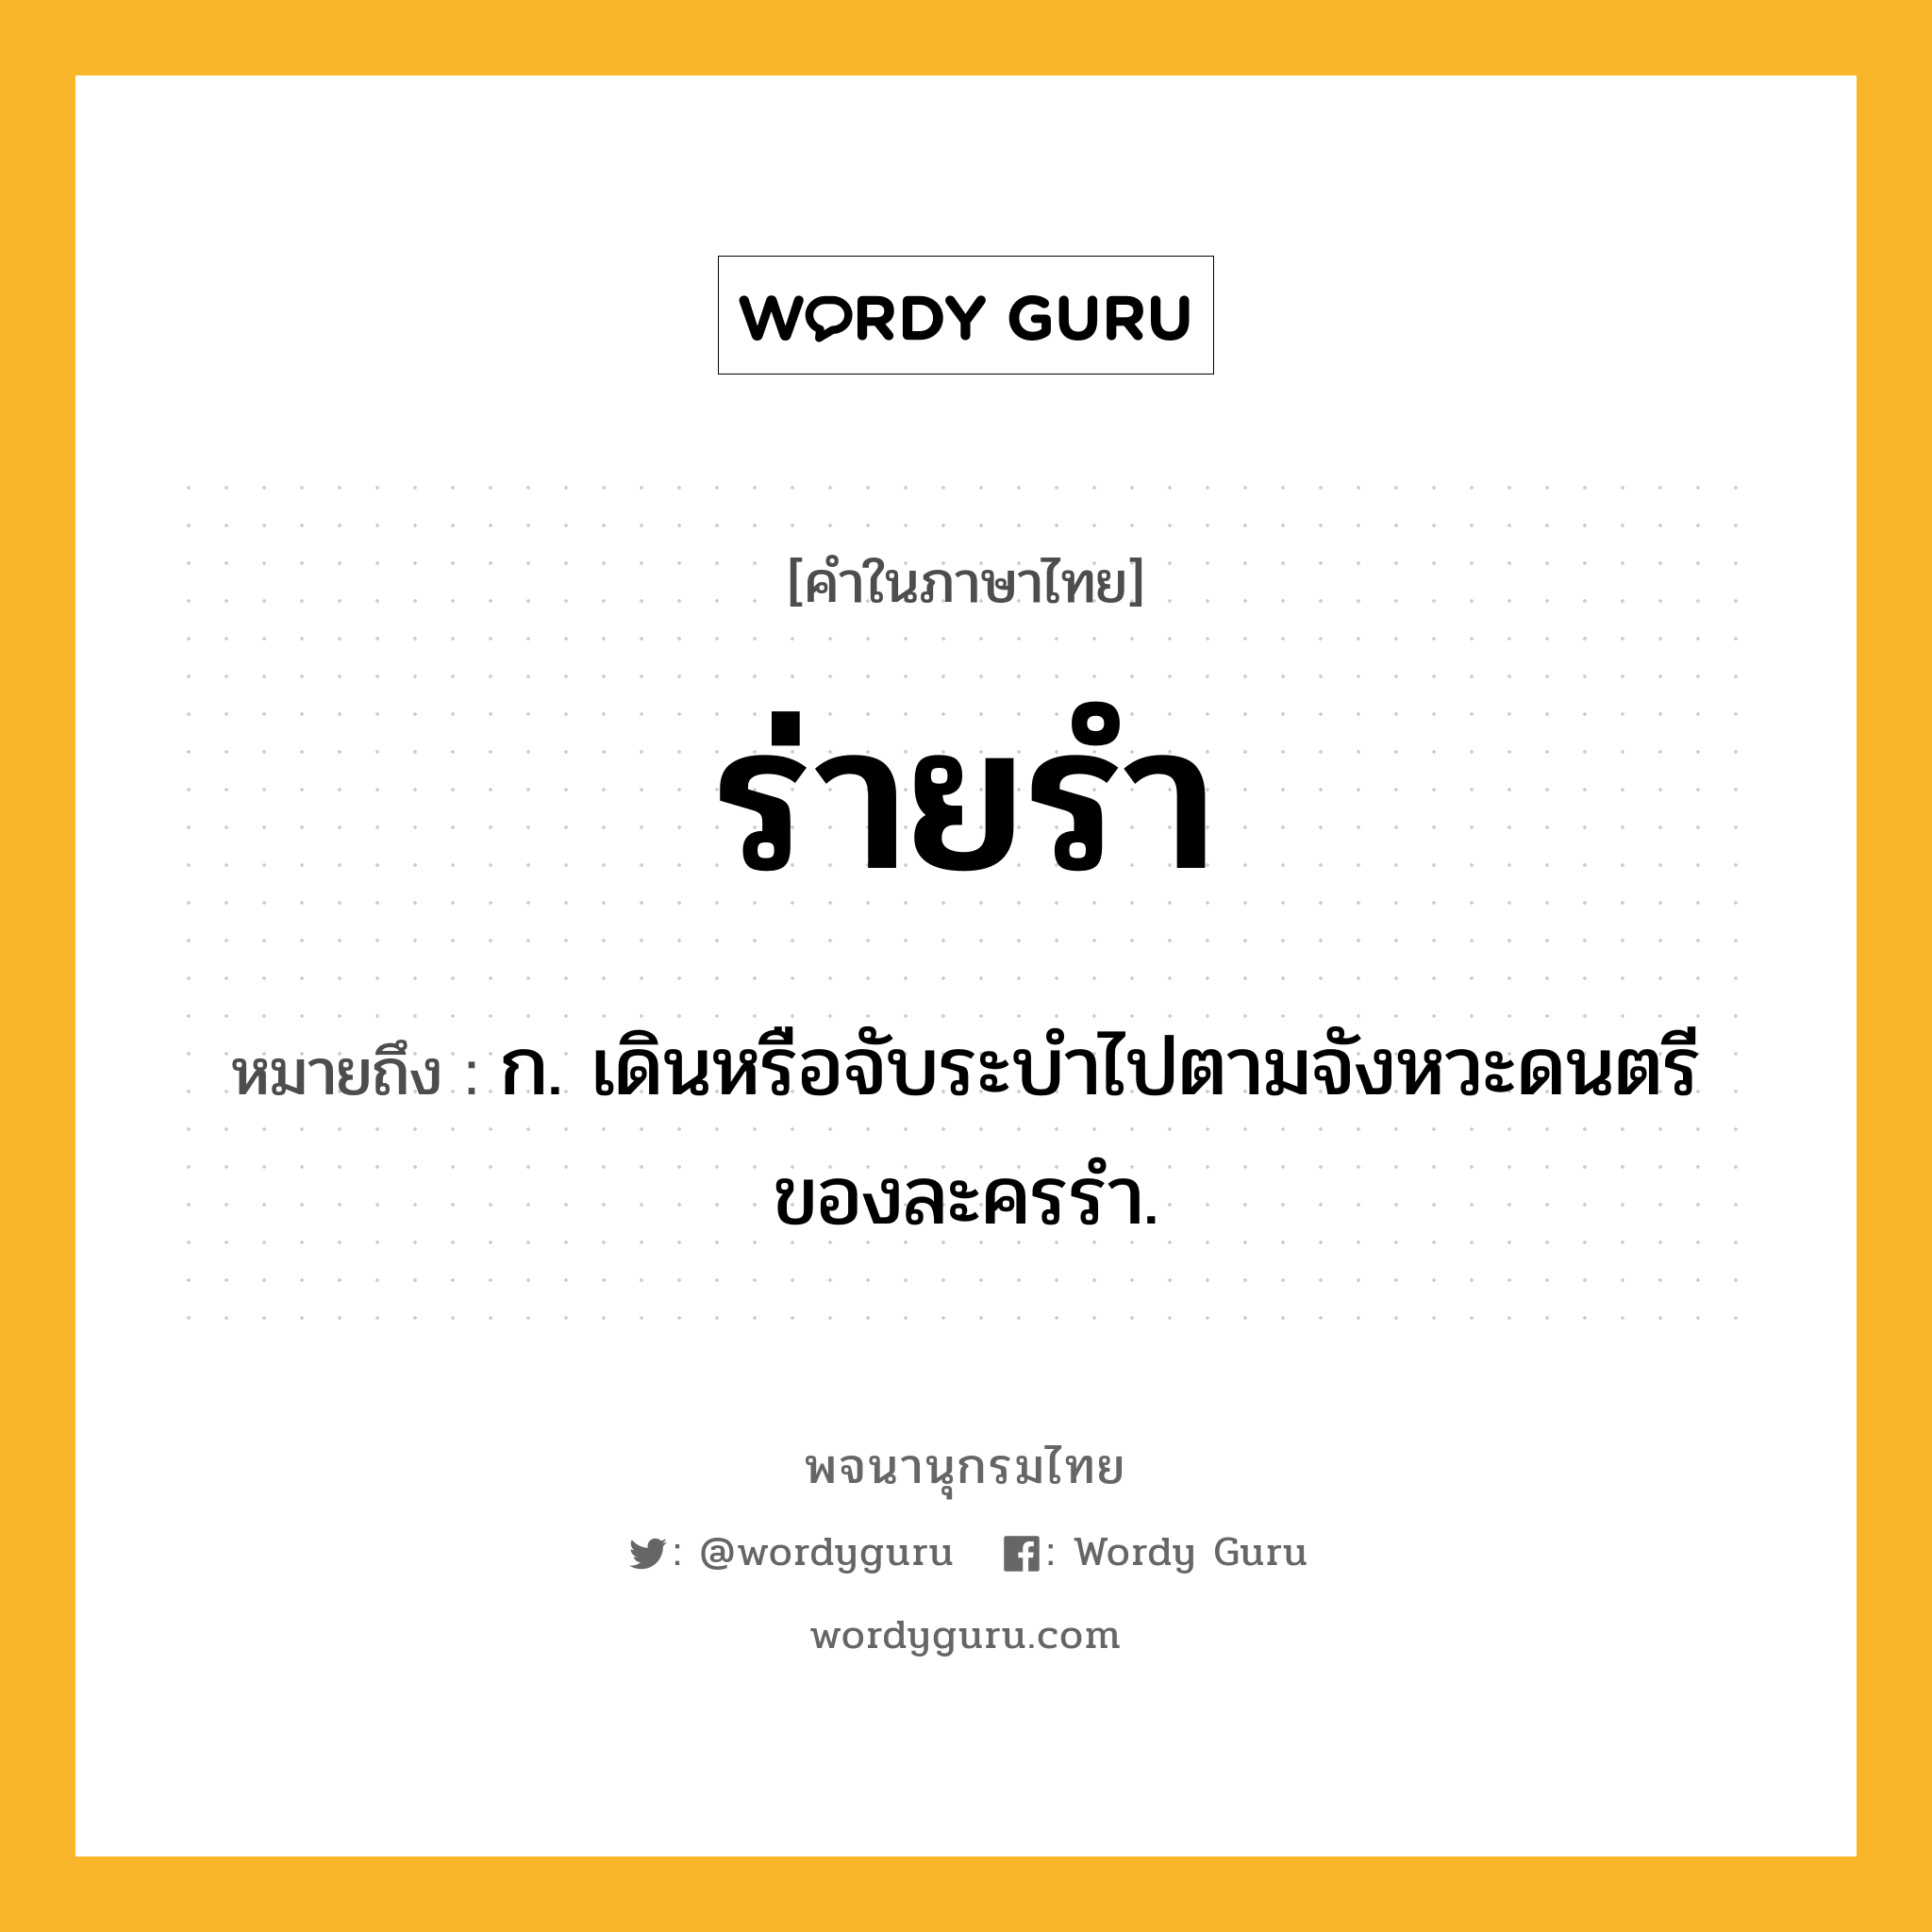 ร่ายรำ หมายถึงอะไร?, คำในภาษาไทย ร่ายรำ หมายถึง ก. เดินหรือจับระบำไปตามจังหวะดนตรีของละครรำ.